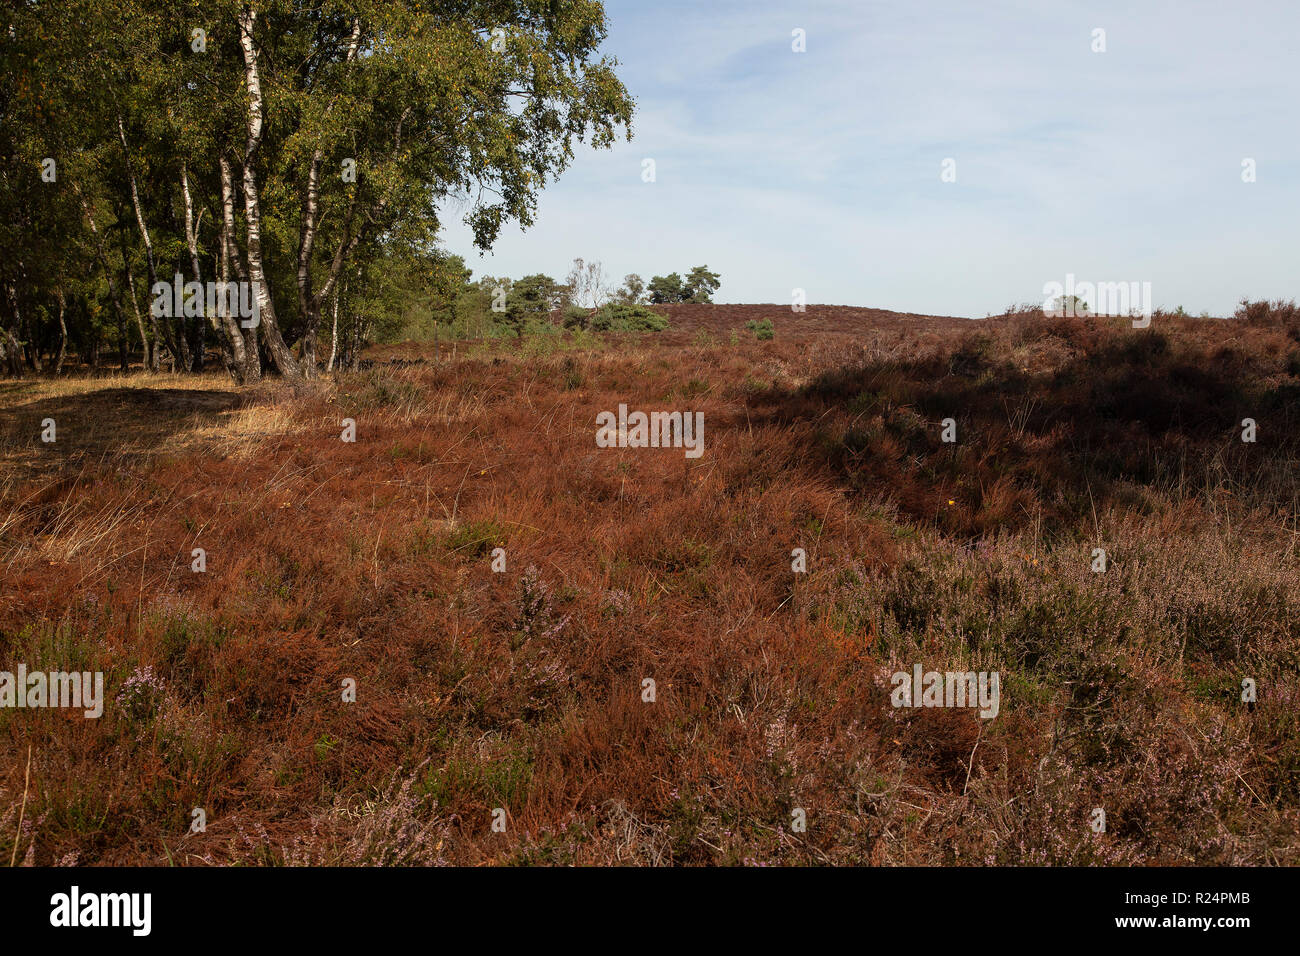 Withered heath en raison de l'été chaud et sec, le Parc National de Maasduinen, Limbourg, Pays-Bas Banque D'Images